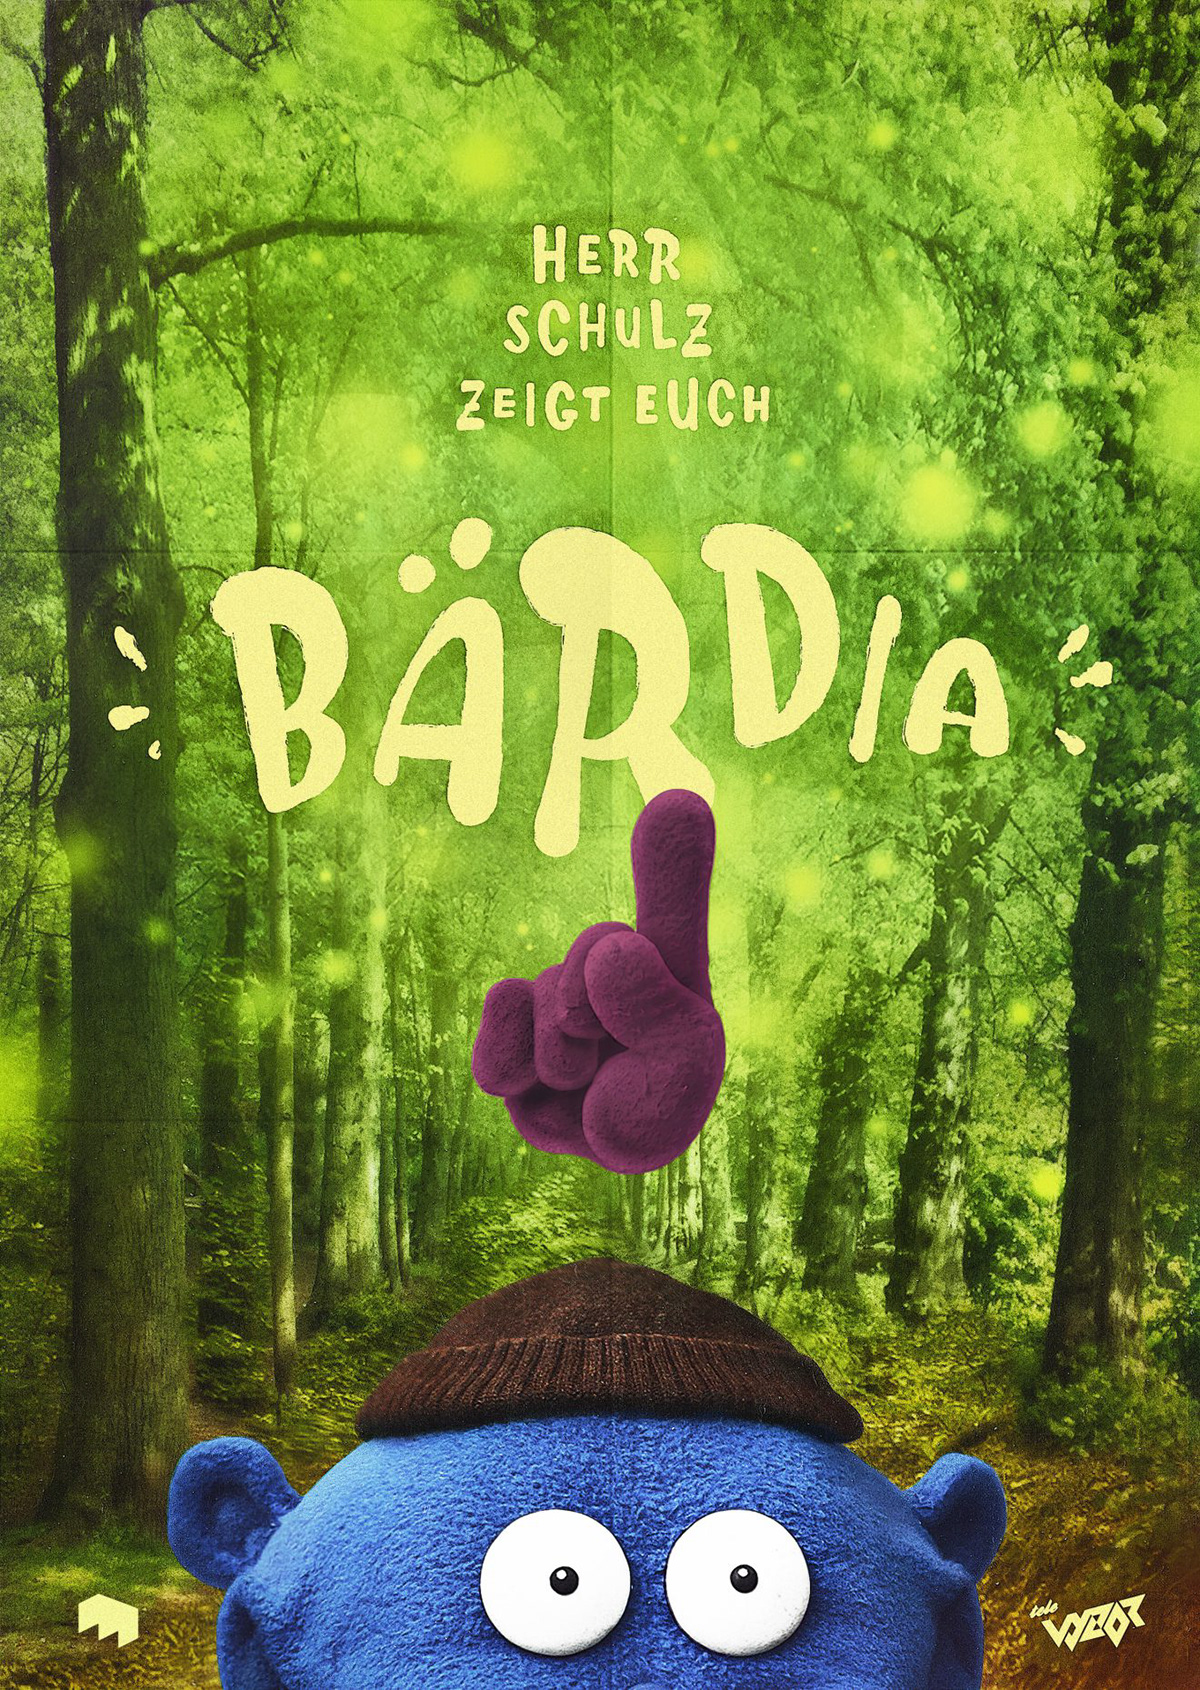 Film   animation  puppets Muppets handpuppets kermit ILLUSTRATION  Bärdia vyzor alexschulz